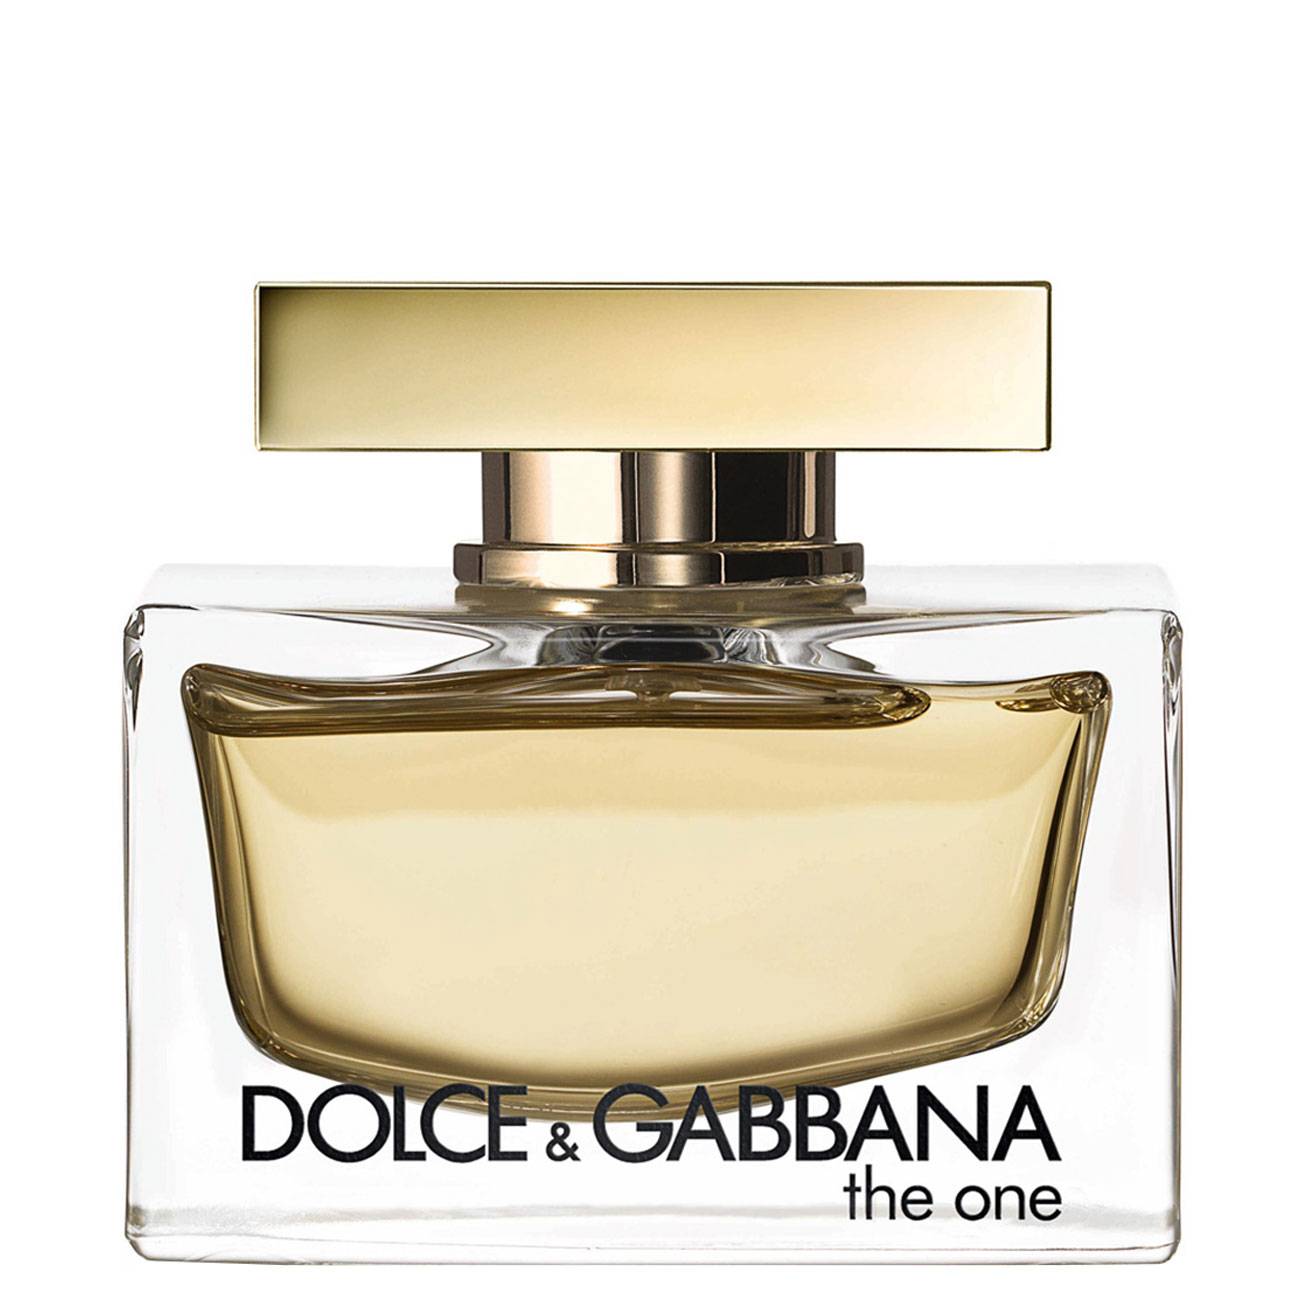 THE ONE 75ml – Dolce & Gabbana bestvalue.eu